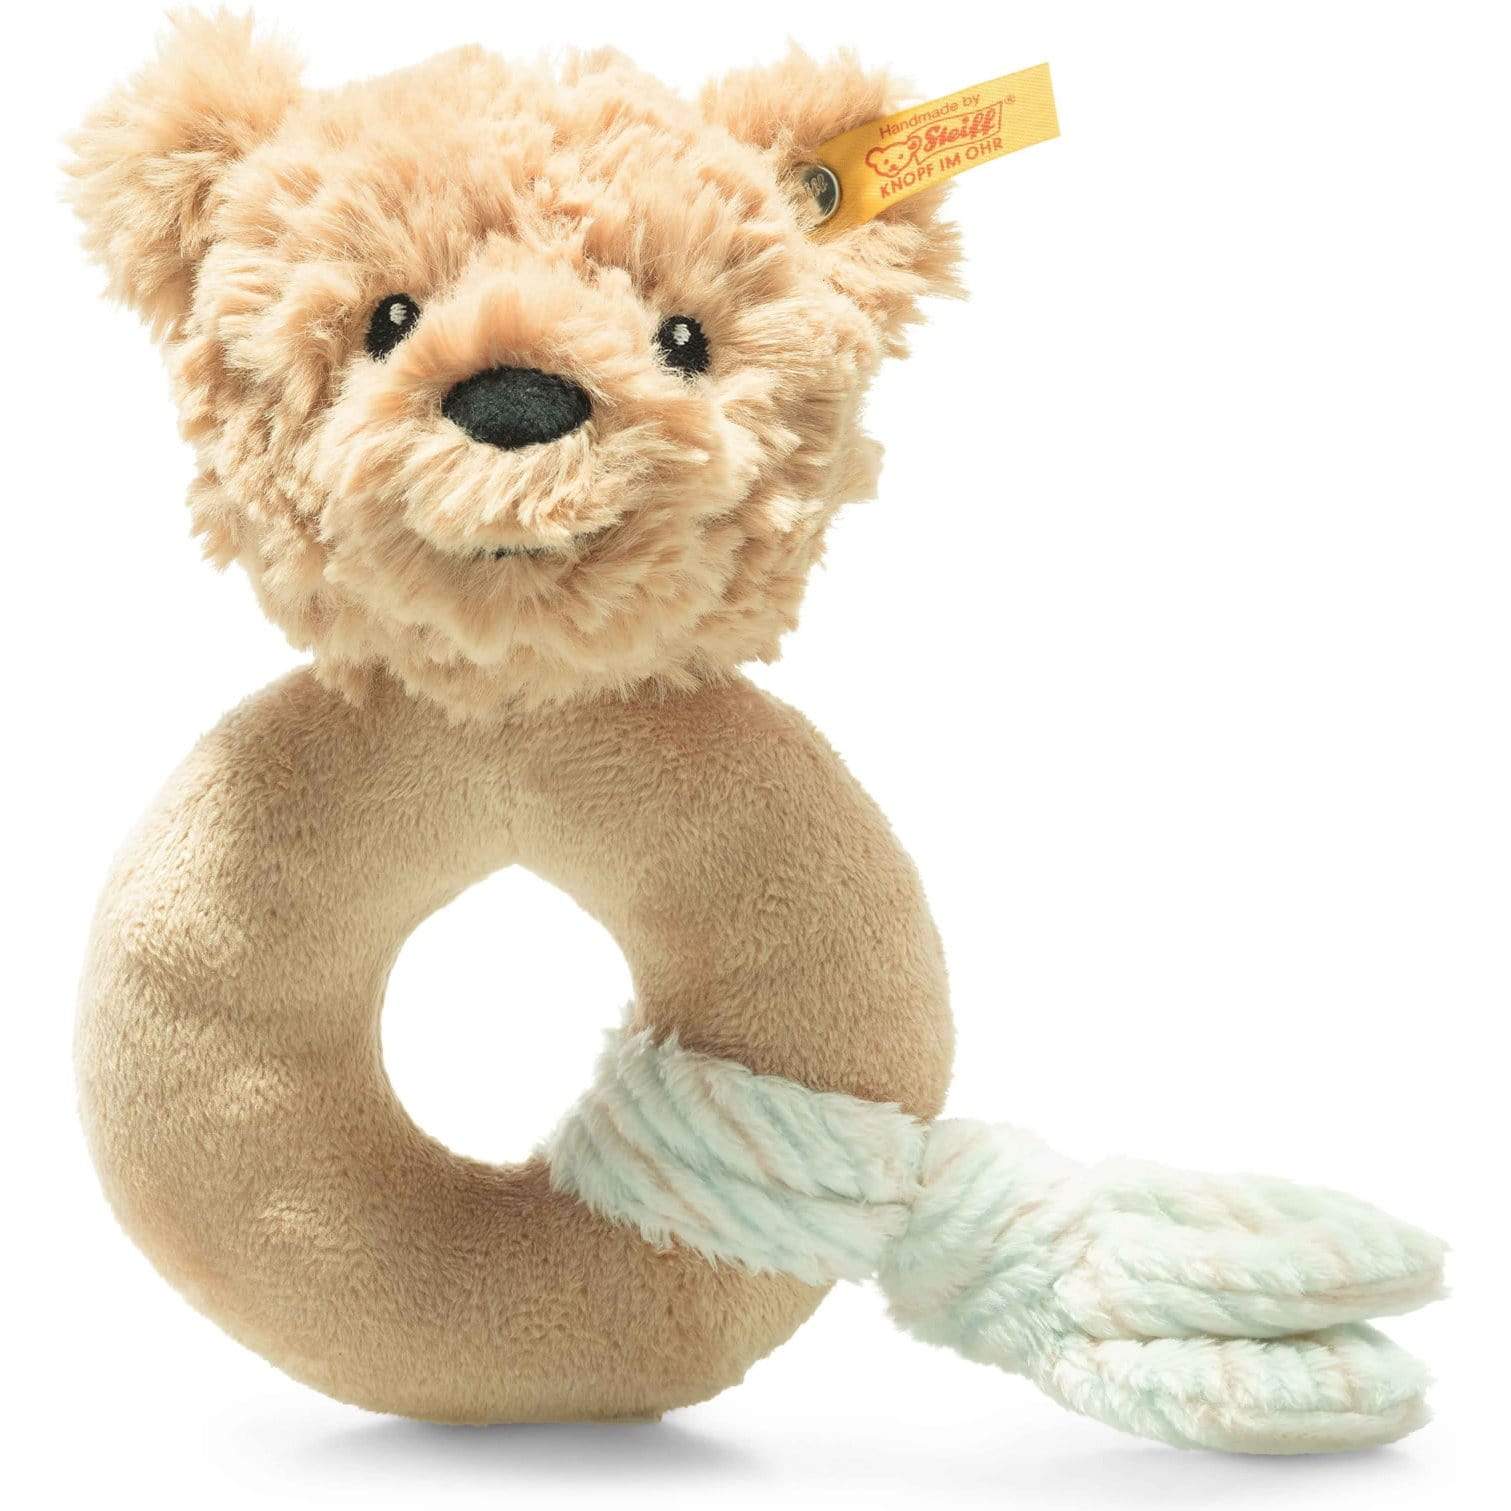 Steiff Soft Cuddly Friends Jimmy Teddy Bear Grip Toy Rattle Soft Animals 4001505240805